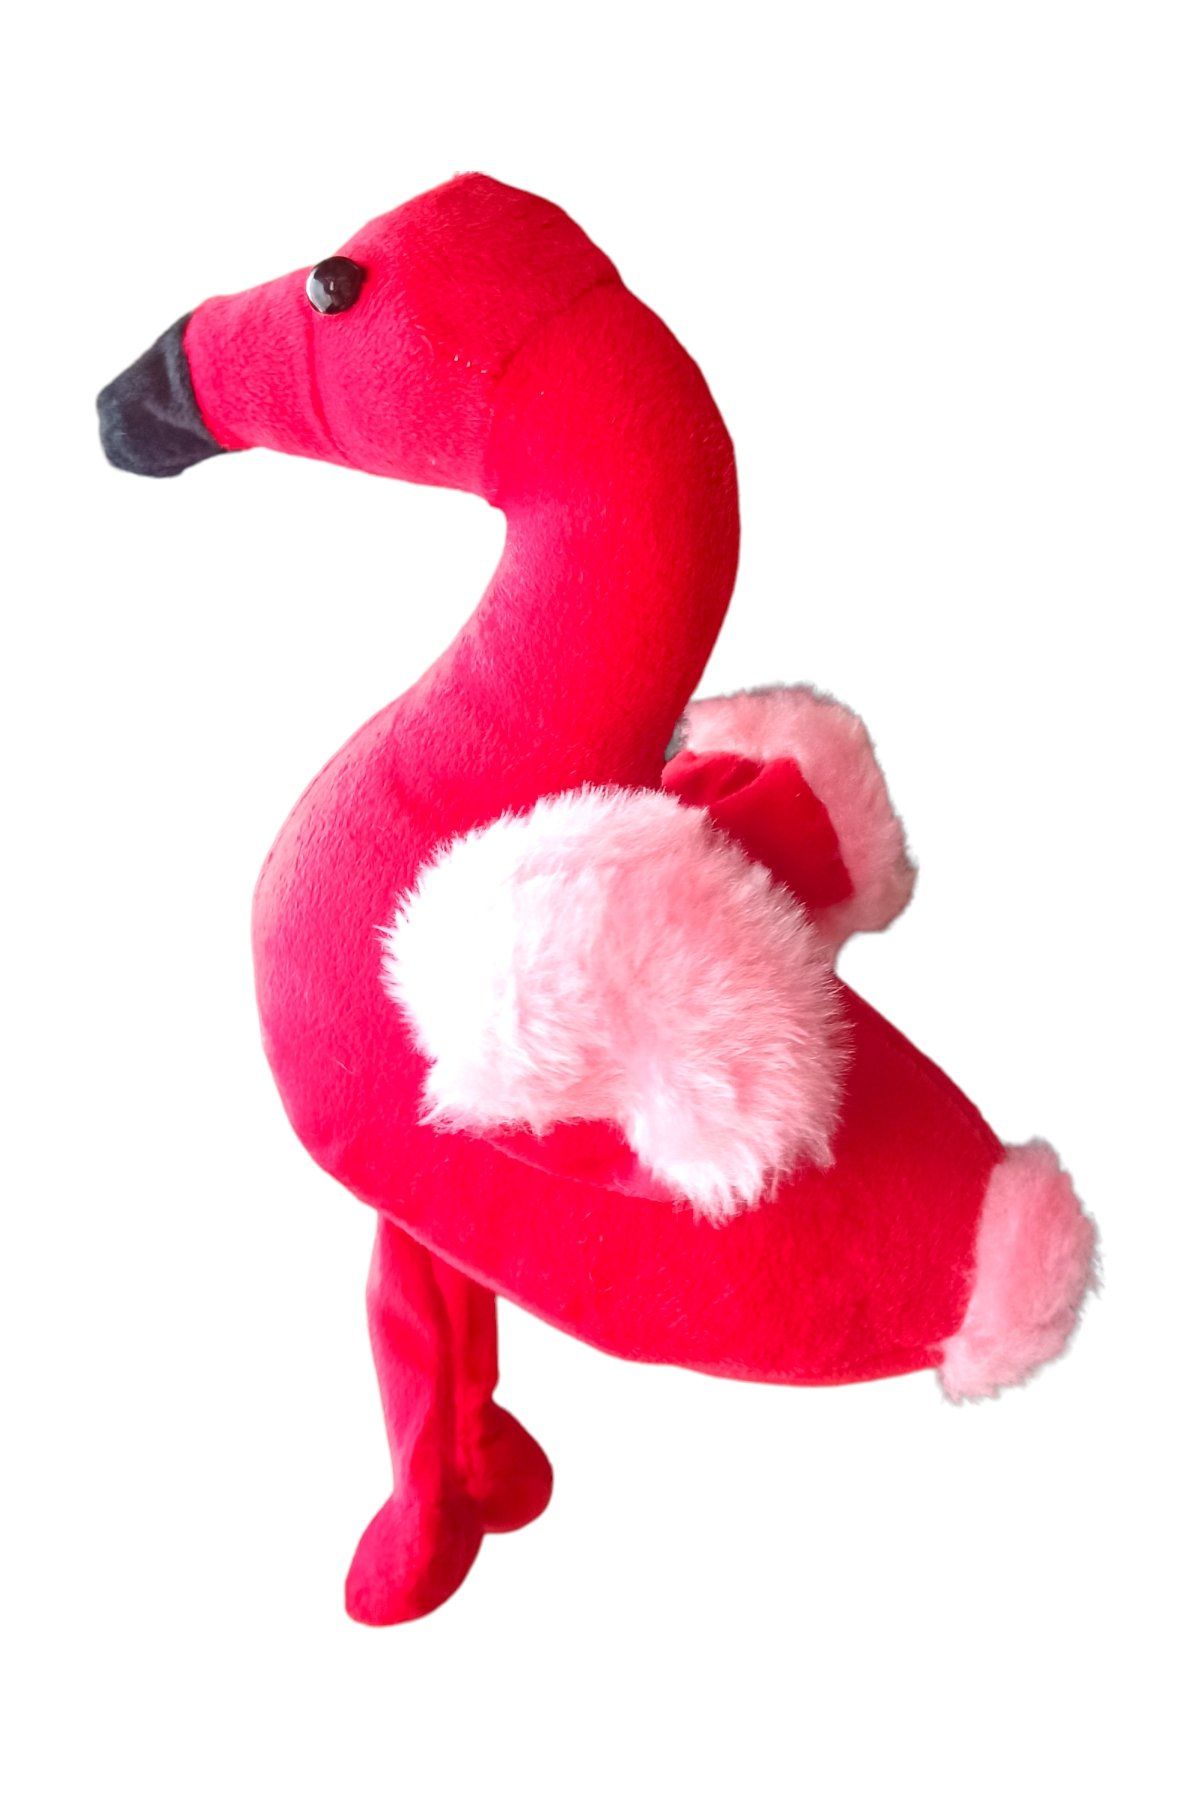 Zarif ve Trend: 25 cm.lik Oyuncak Peluş Flamingo Kırmızı Renk